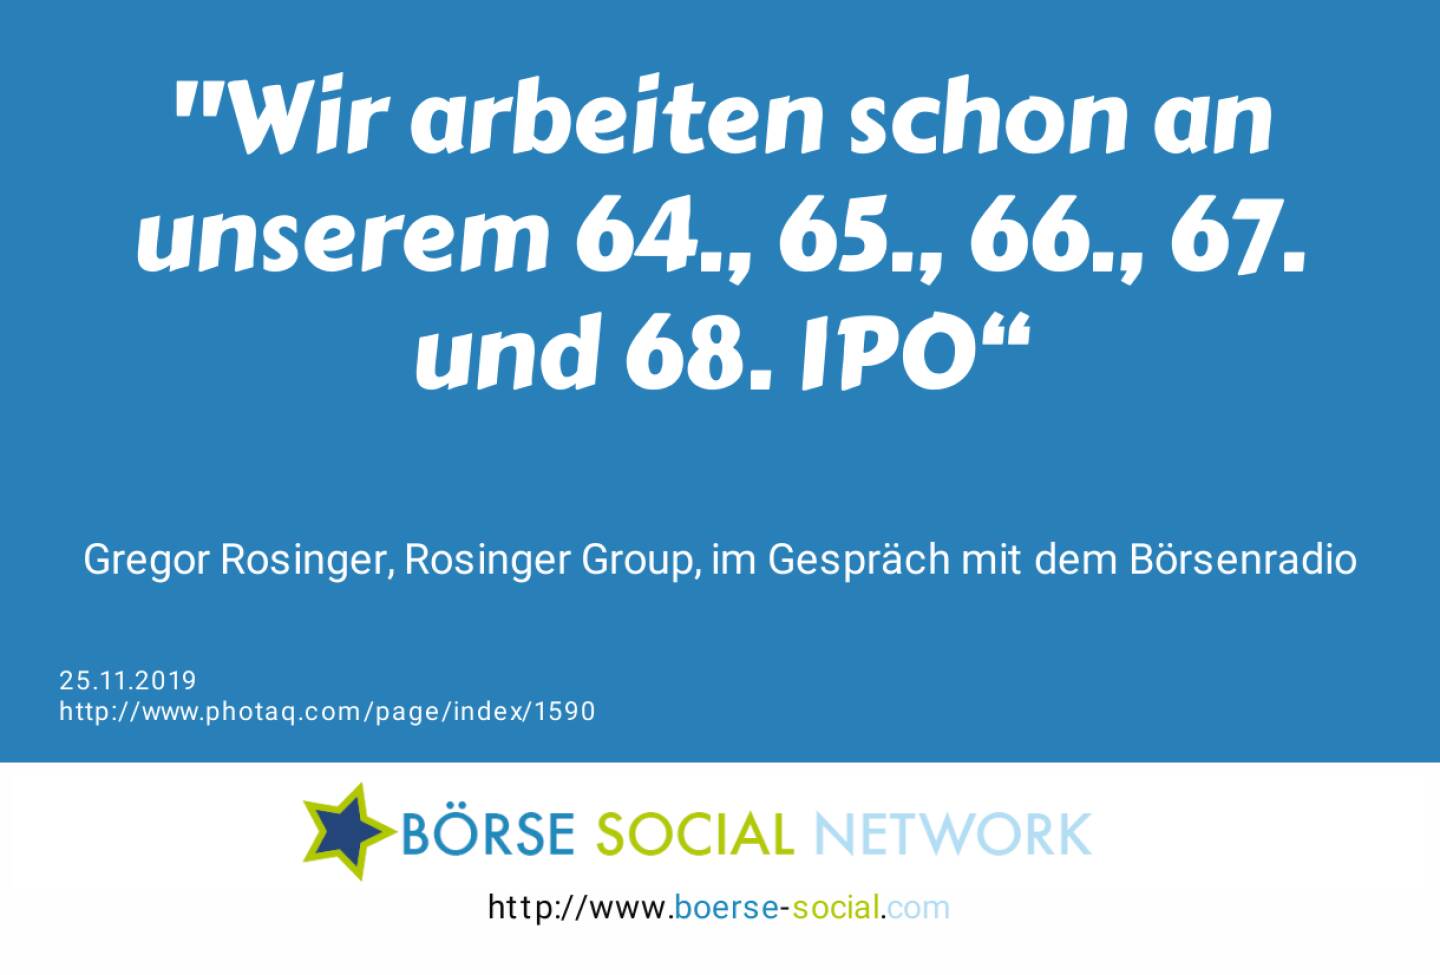 Wir arbeiten schon an unserem 64., 65., 66., 67. und 68. IPO“<br><br> Gregor Rosinger, Rosinger Group, im Gespräch mit dem Börsenradio<br>